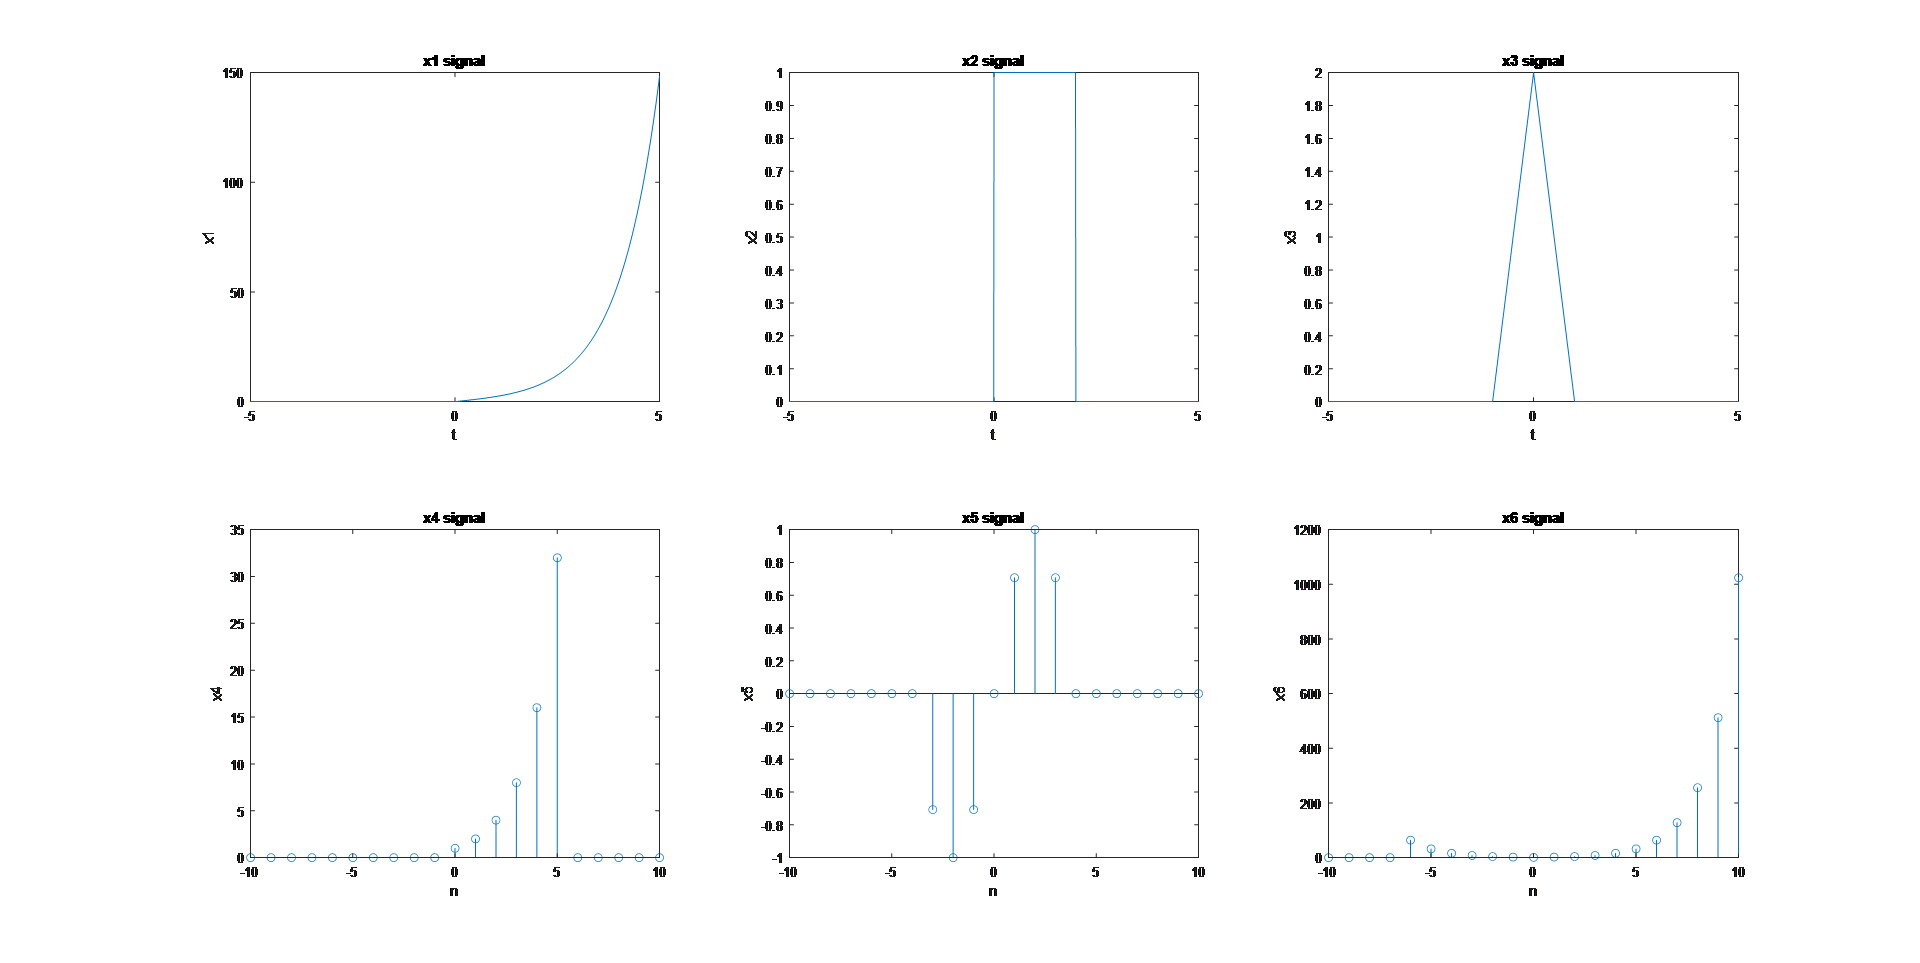 پروژه آموزشی حل تمرین رسم نمودار با سیگنال های تعریف شده سیستم در سیمولینک متلب